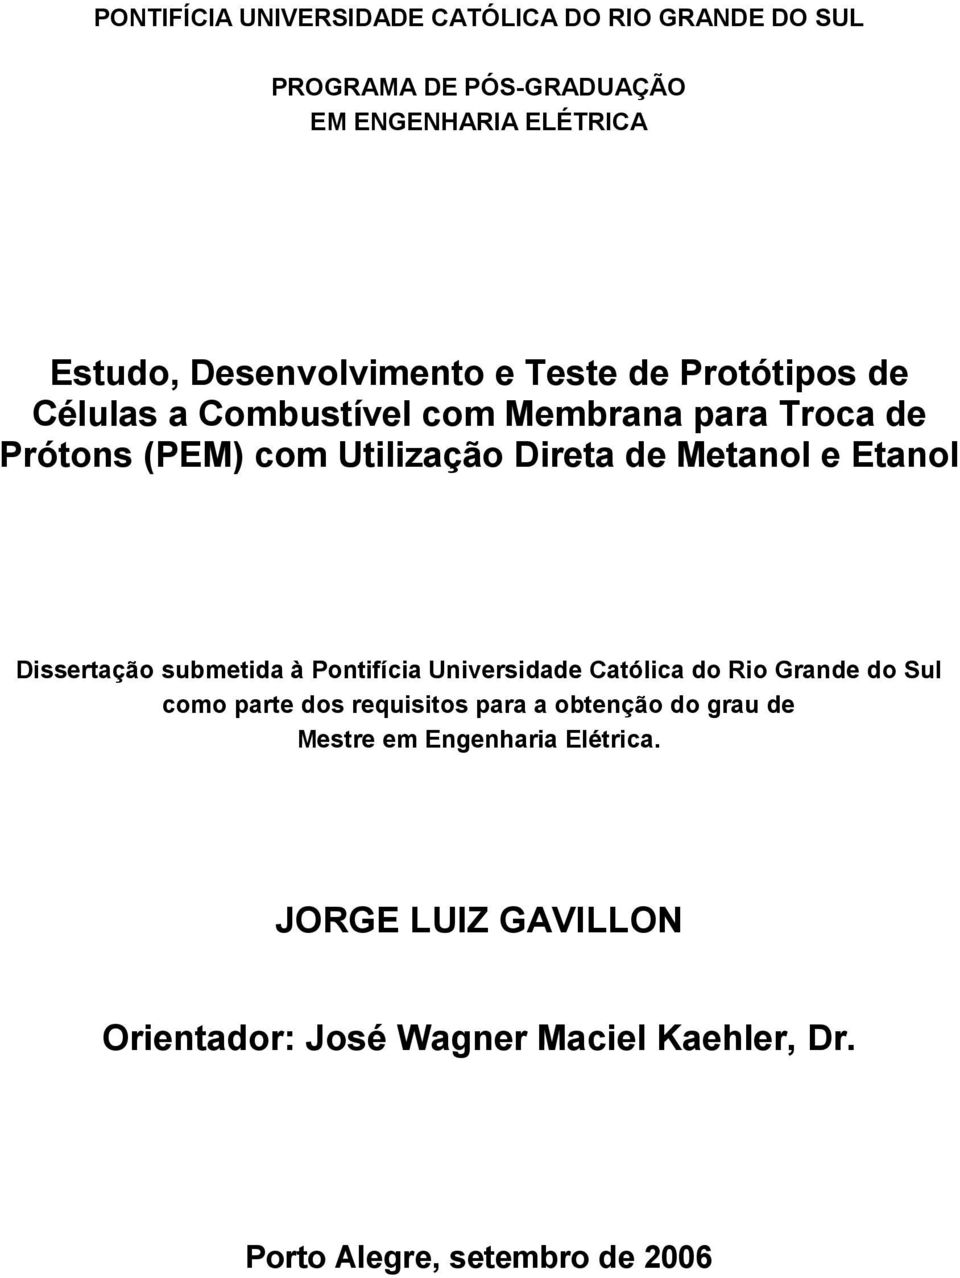 Dissertação submetida à Pontifícia Universidade Católica do Rio Grande do Sul como parte dos requisitos para a obtenção do grau